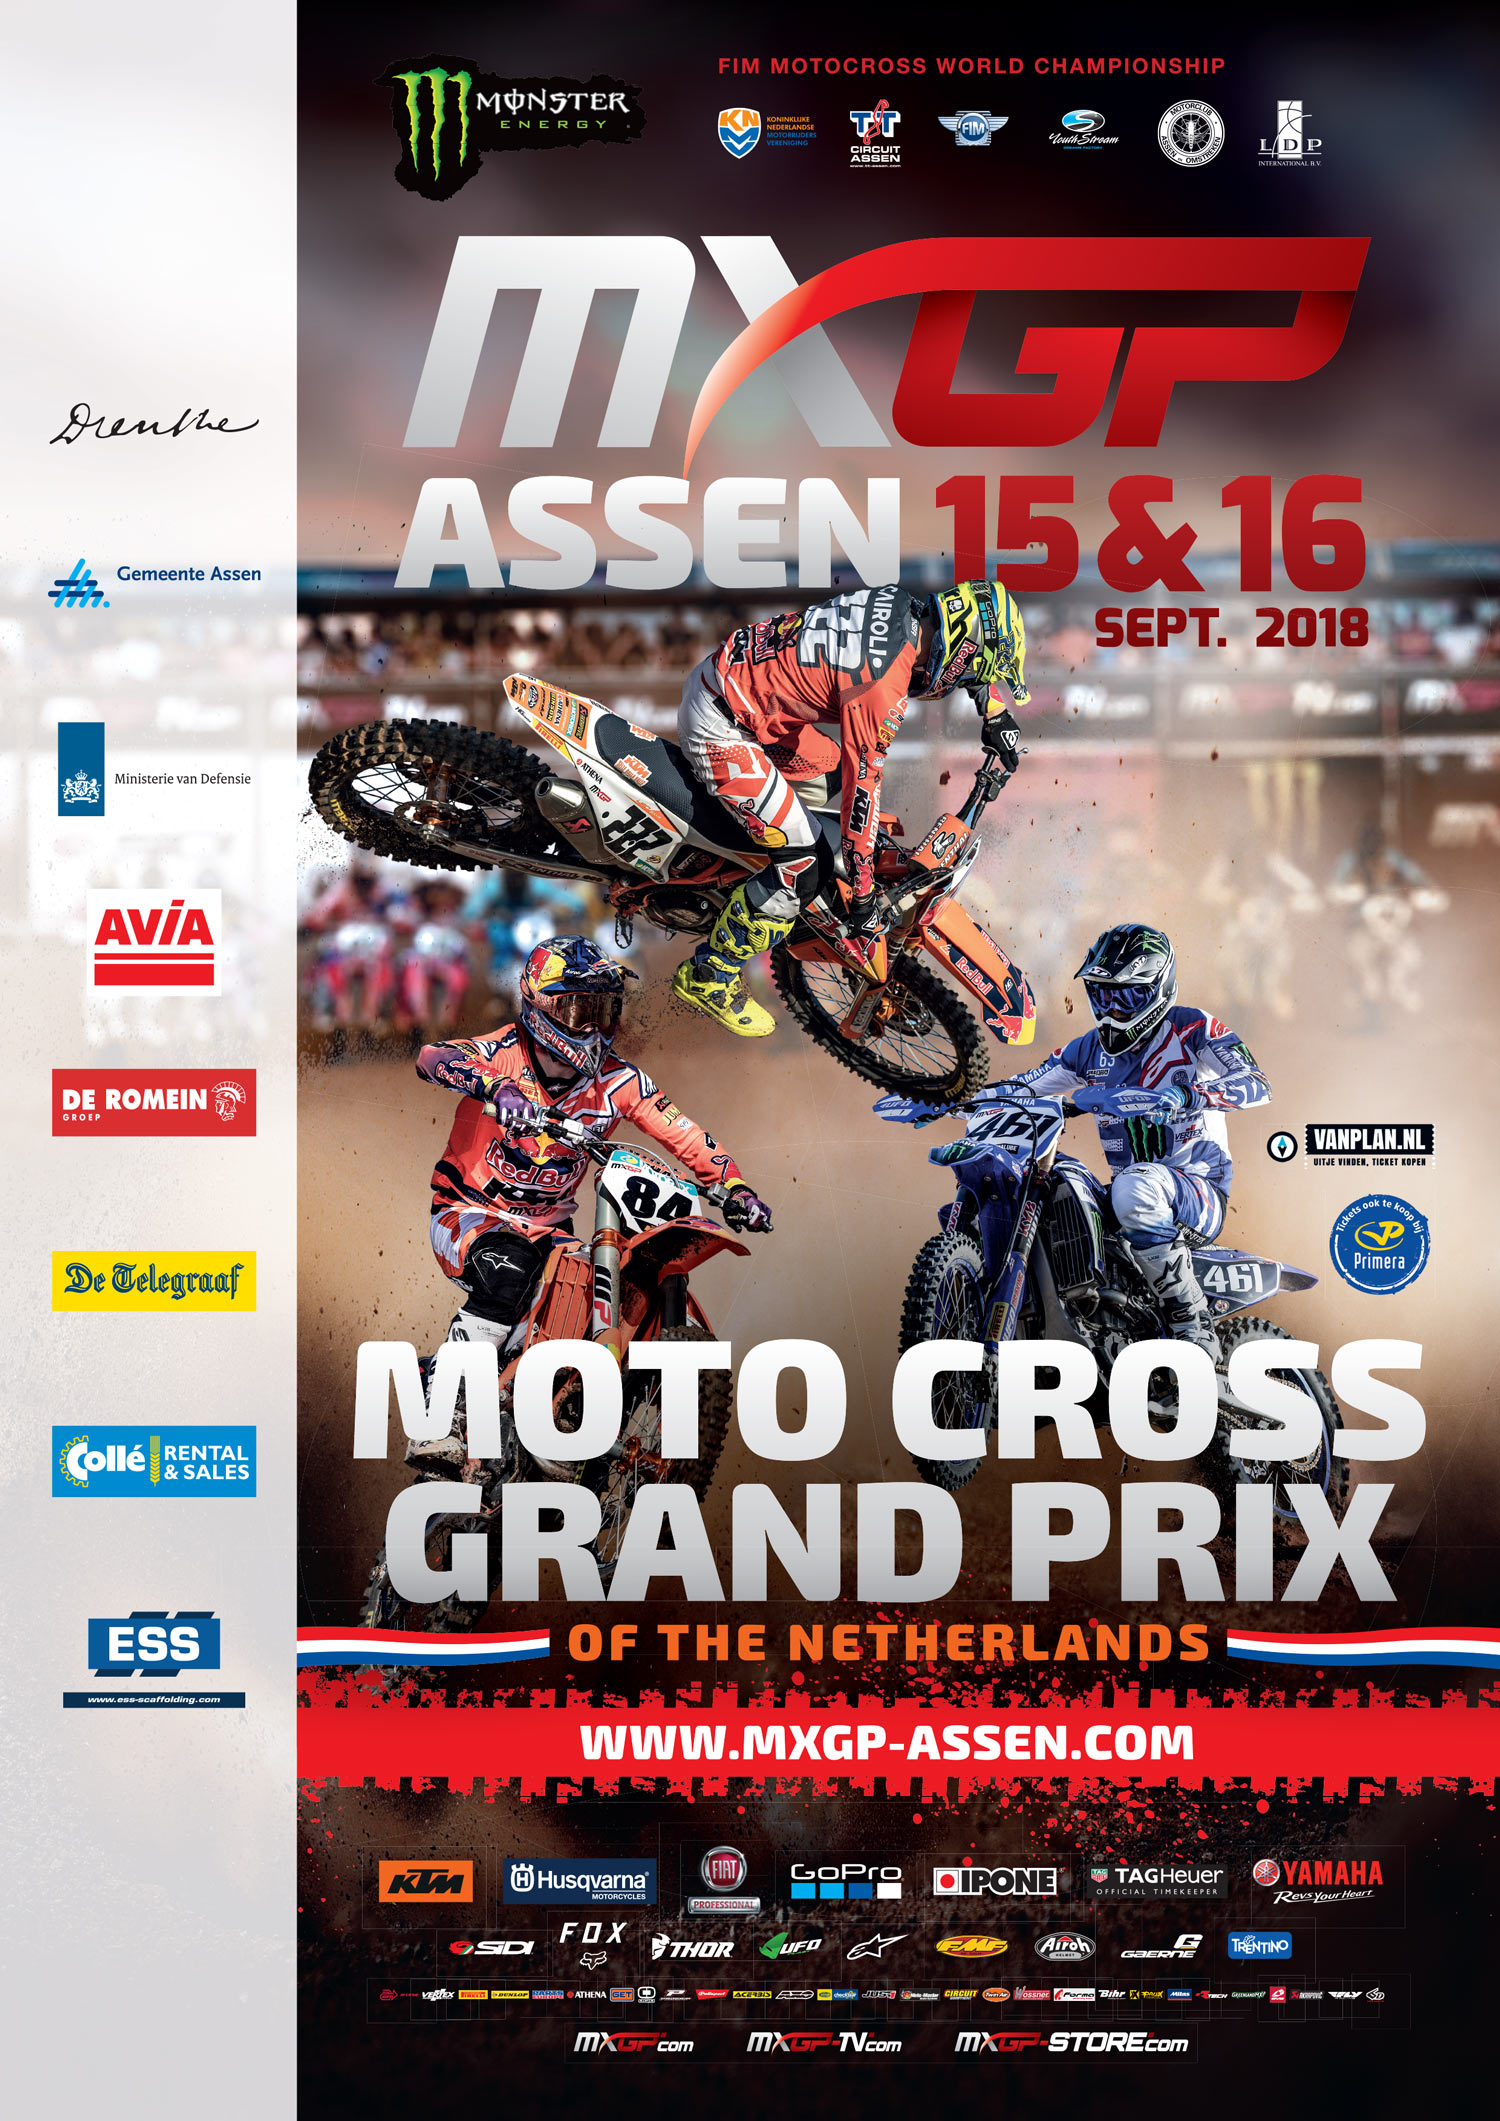 Motocross Grand Prix - TT Circuit Assen